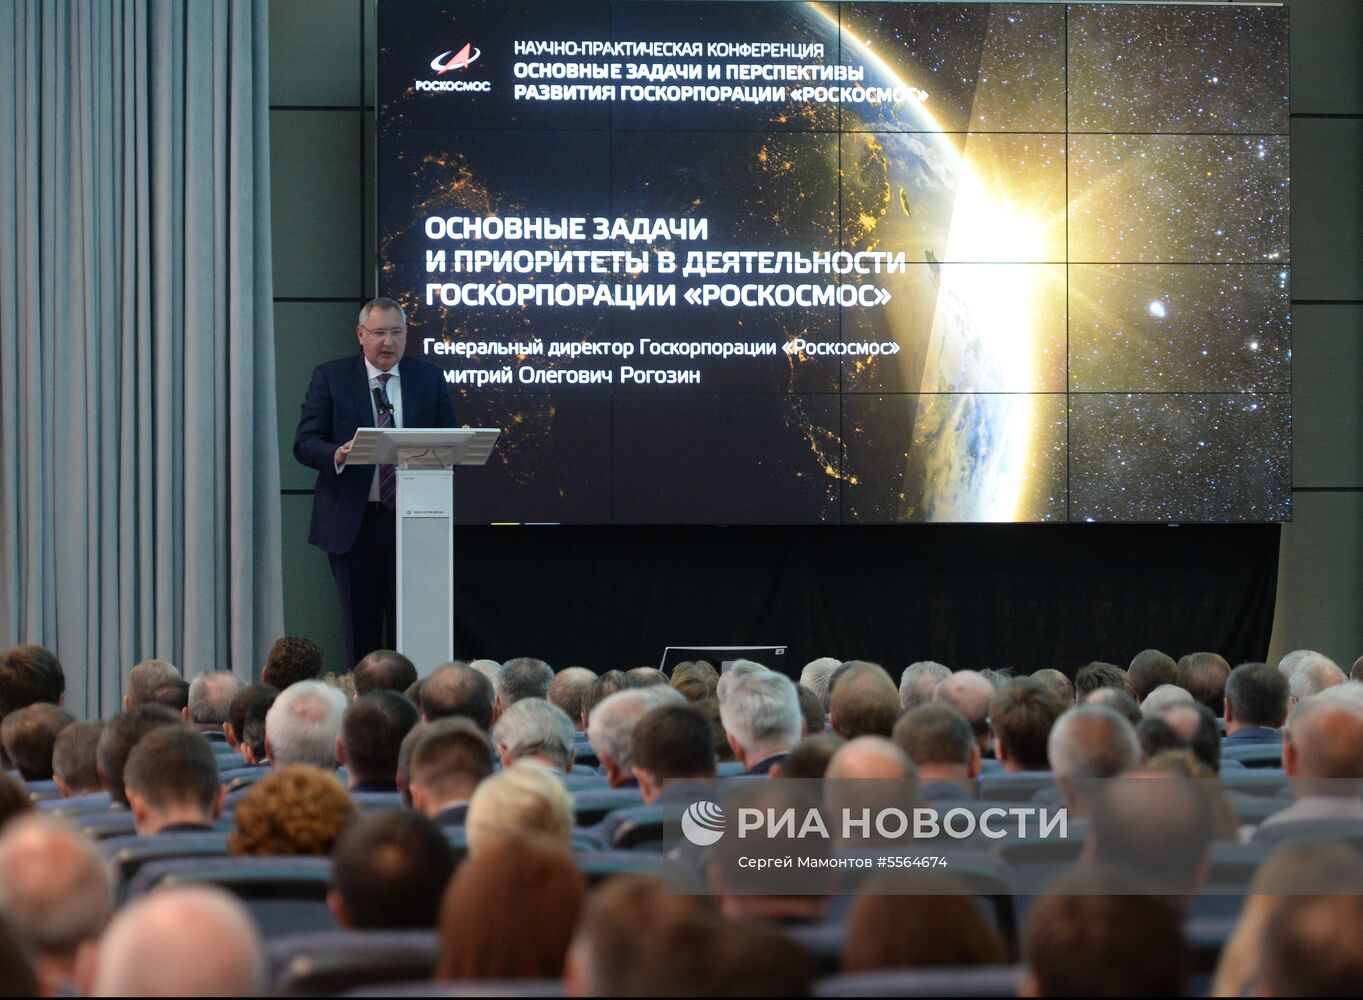 Научно-практическая конференция "Роскосмоса"